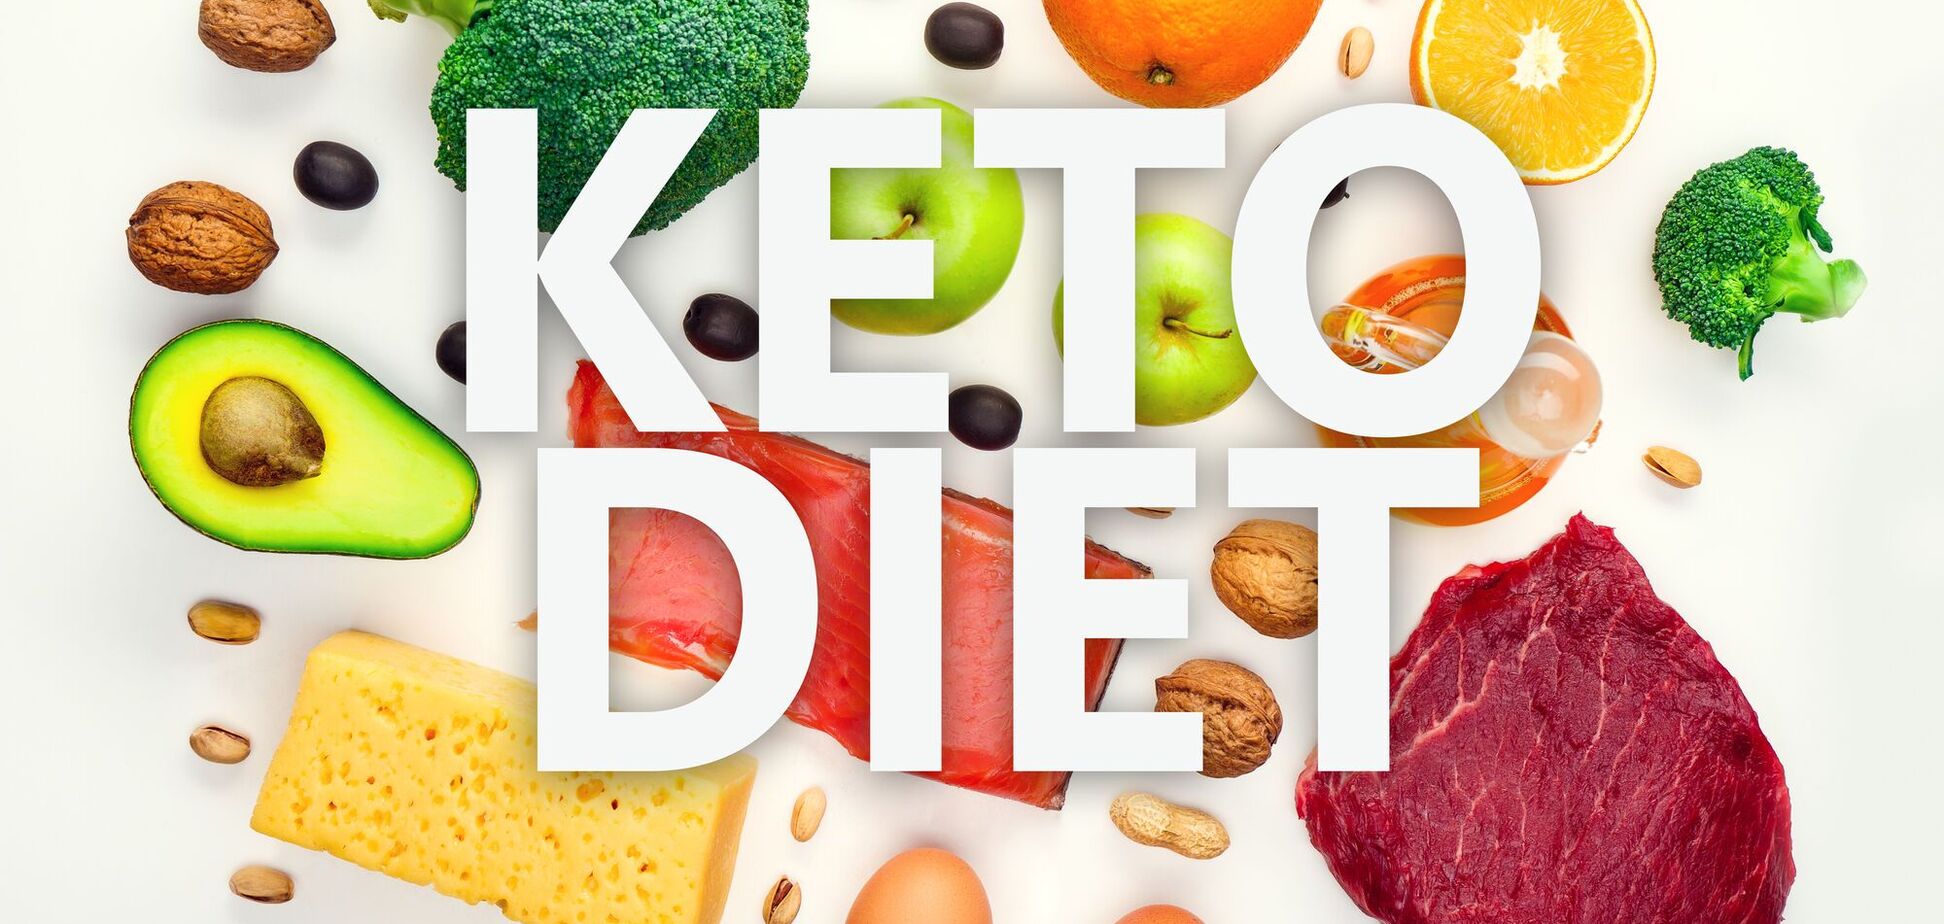 Кето-диета при диабете: вес и сахар под контролем